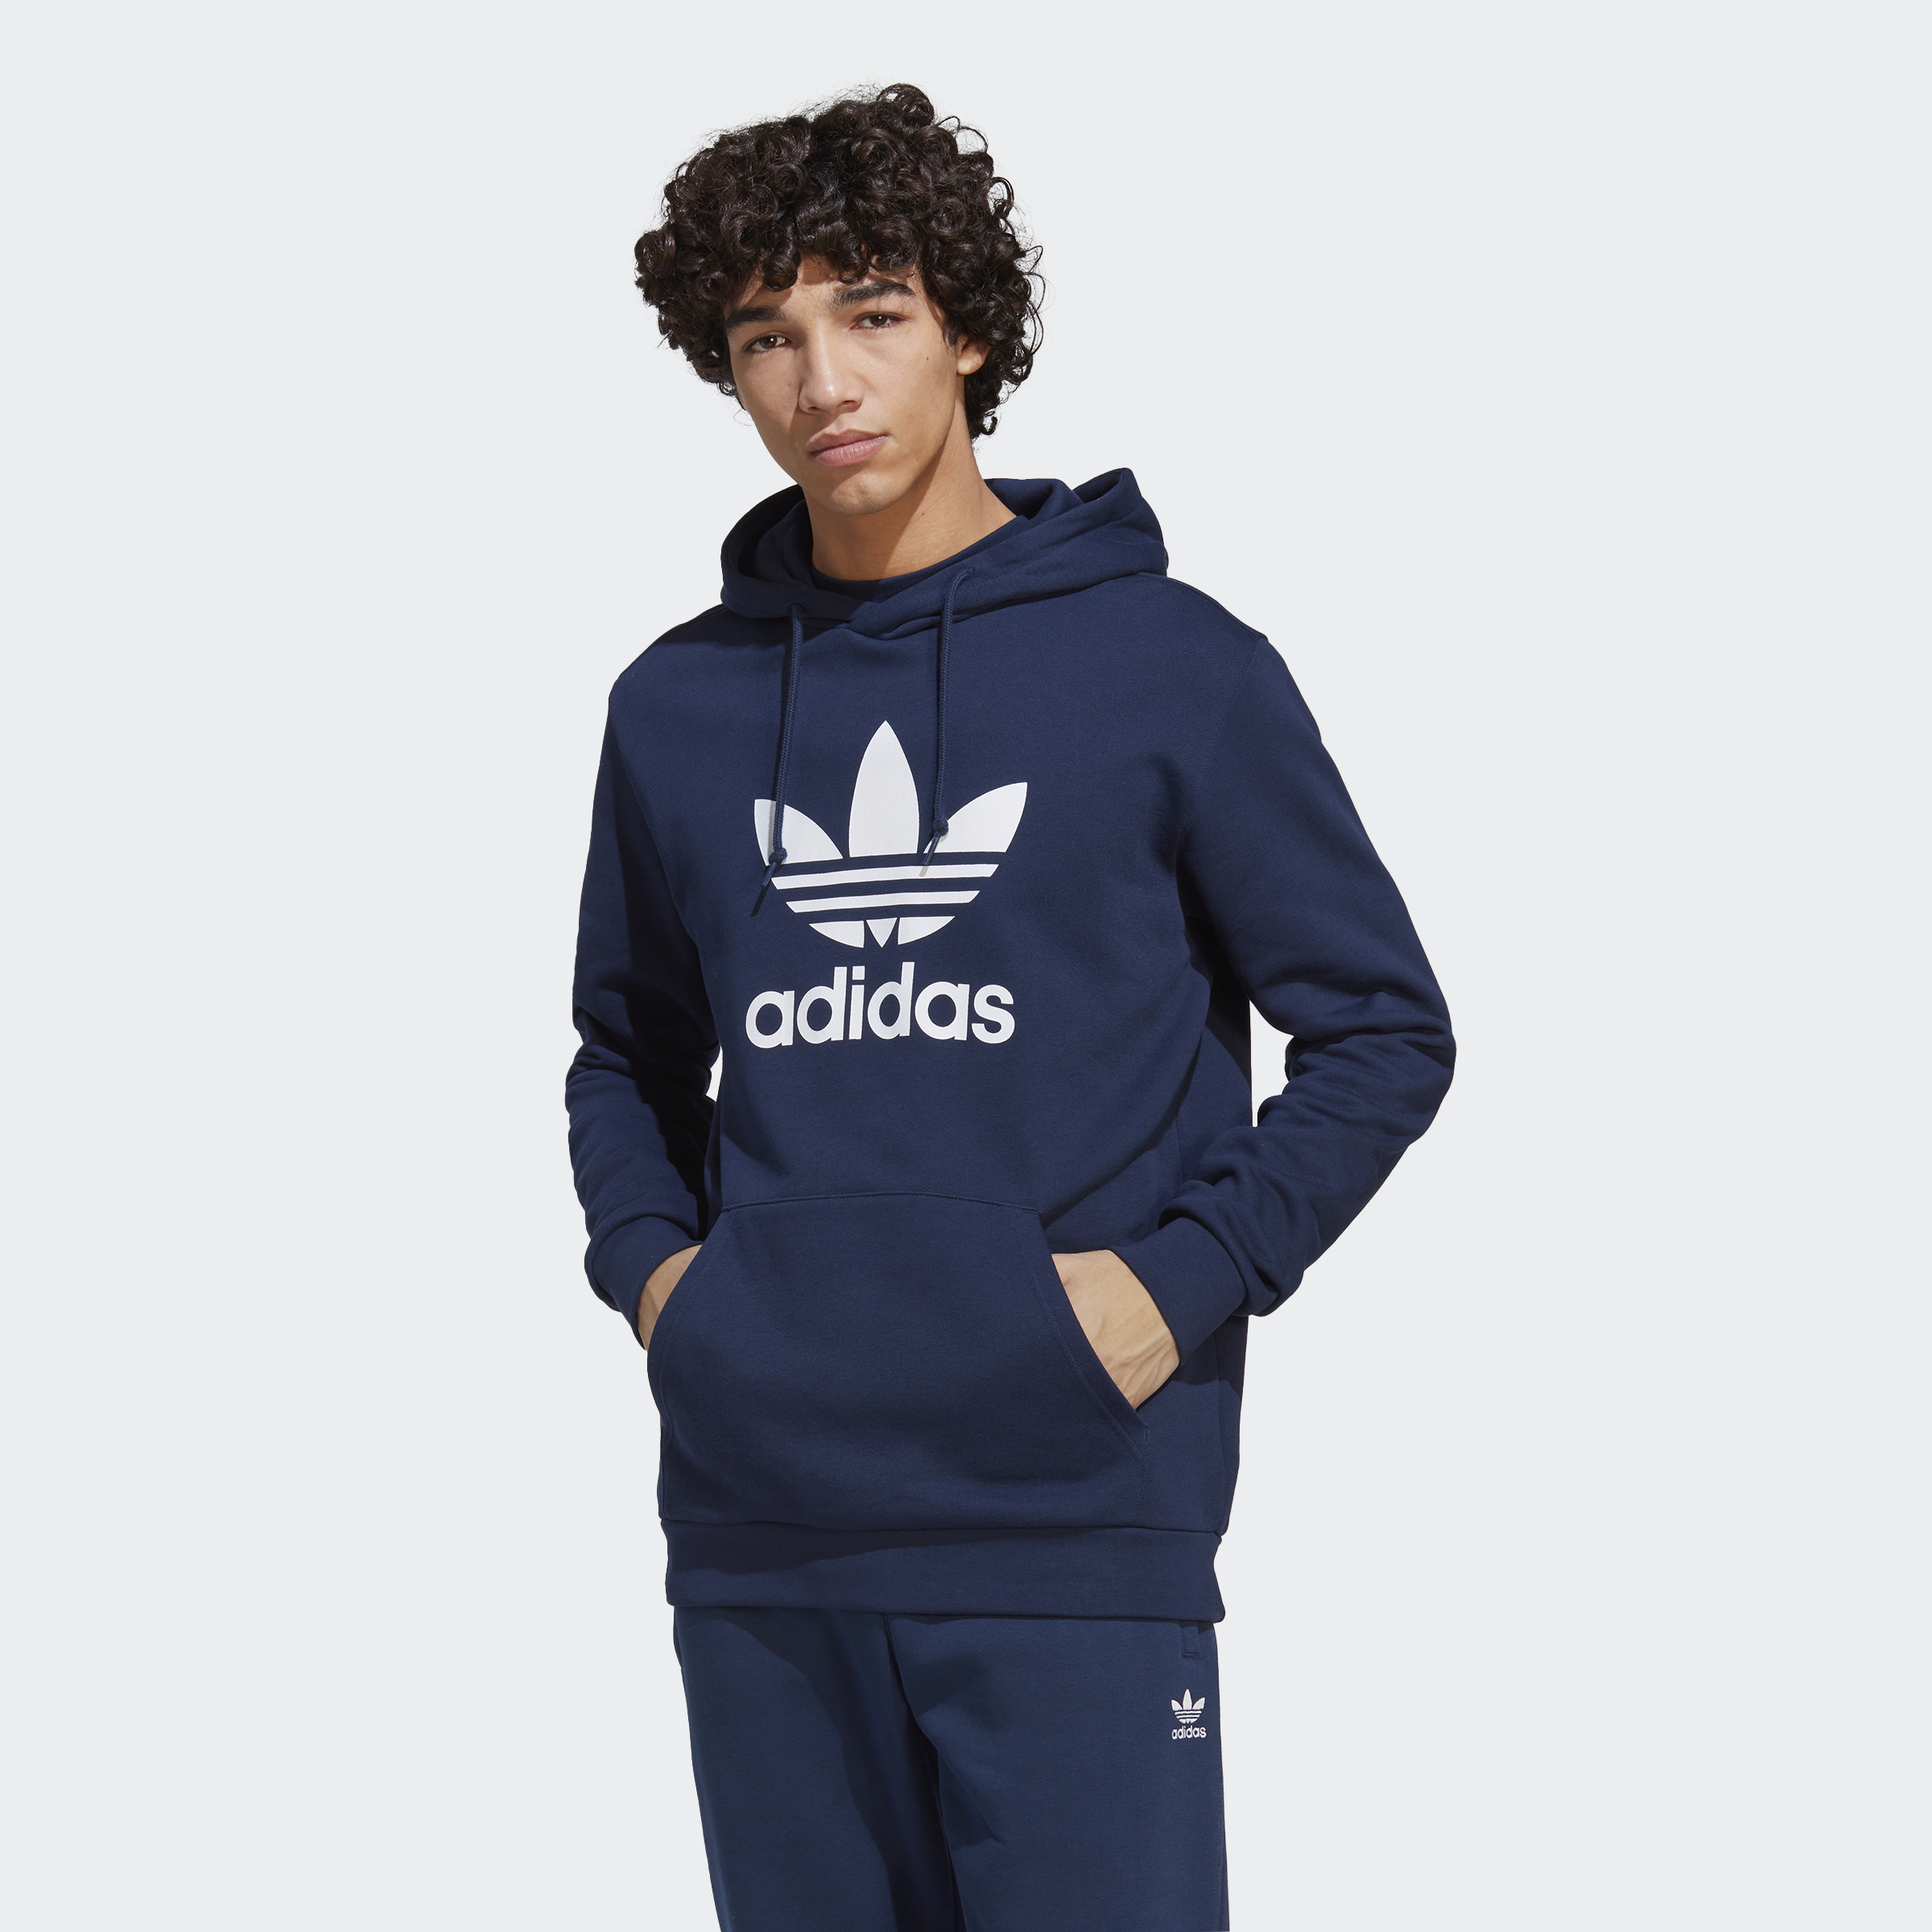 Distilleren Ontslag nemen Afname Adidas Originals Sweater & Jacken für Herren günstig kaufen | baur.de